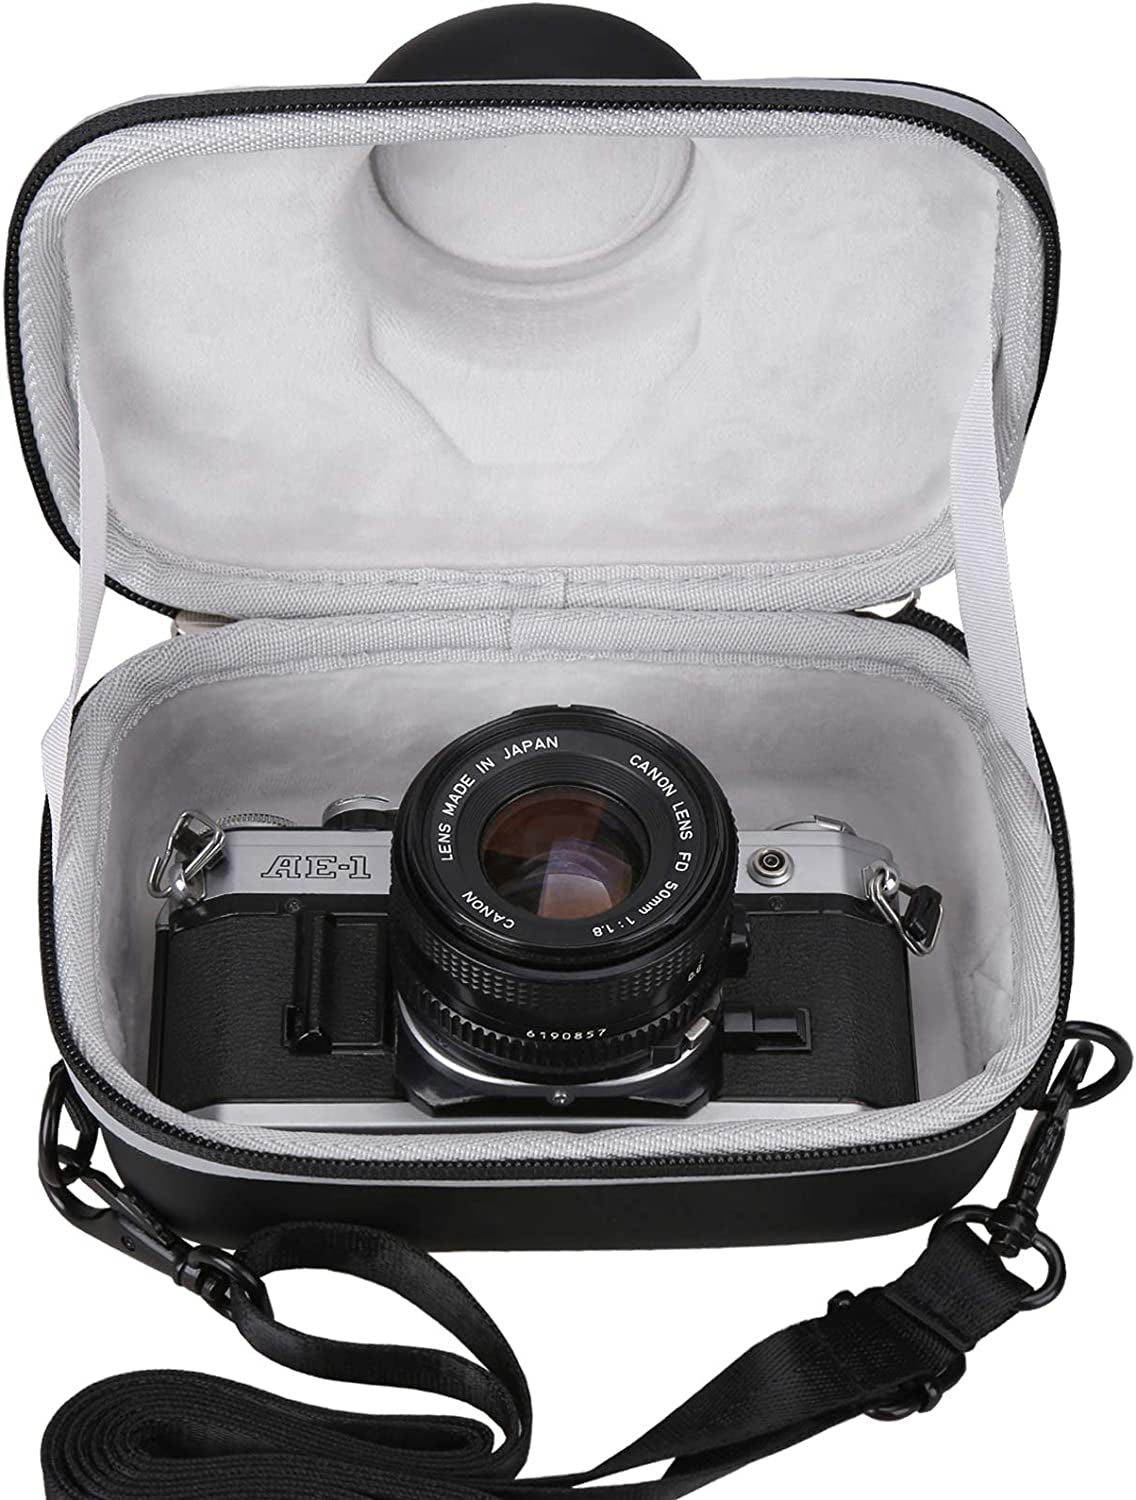 Case for Canon AE-1 35Mm Film Camera